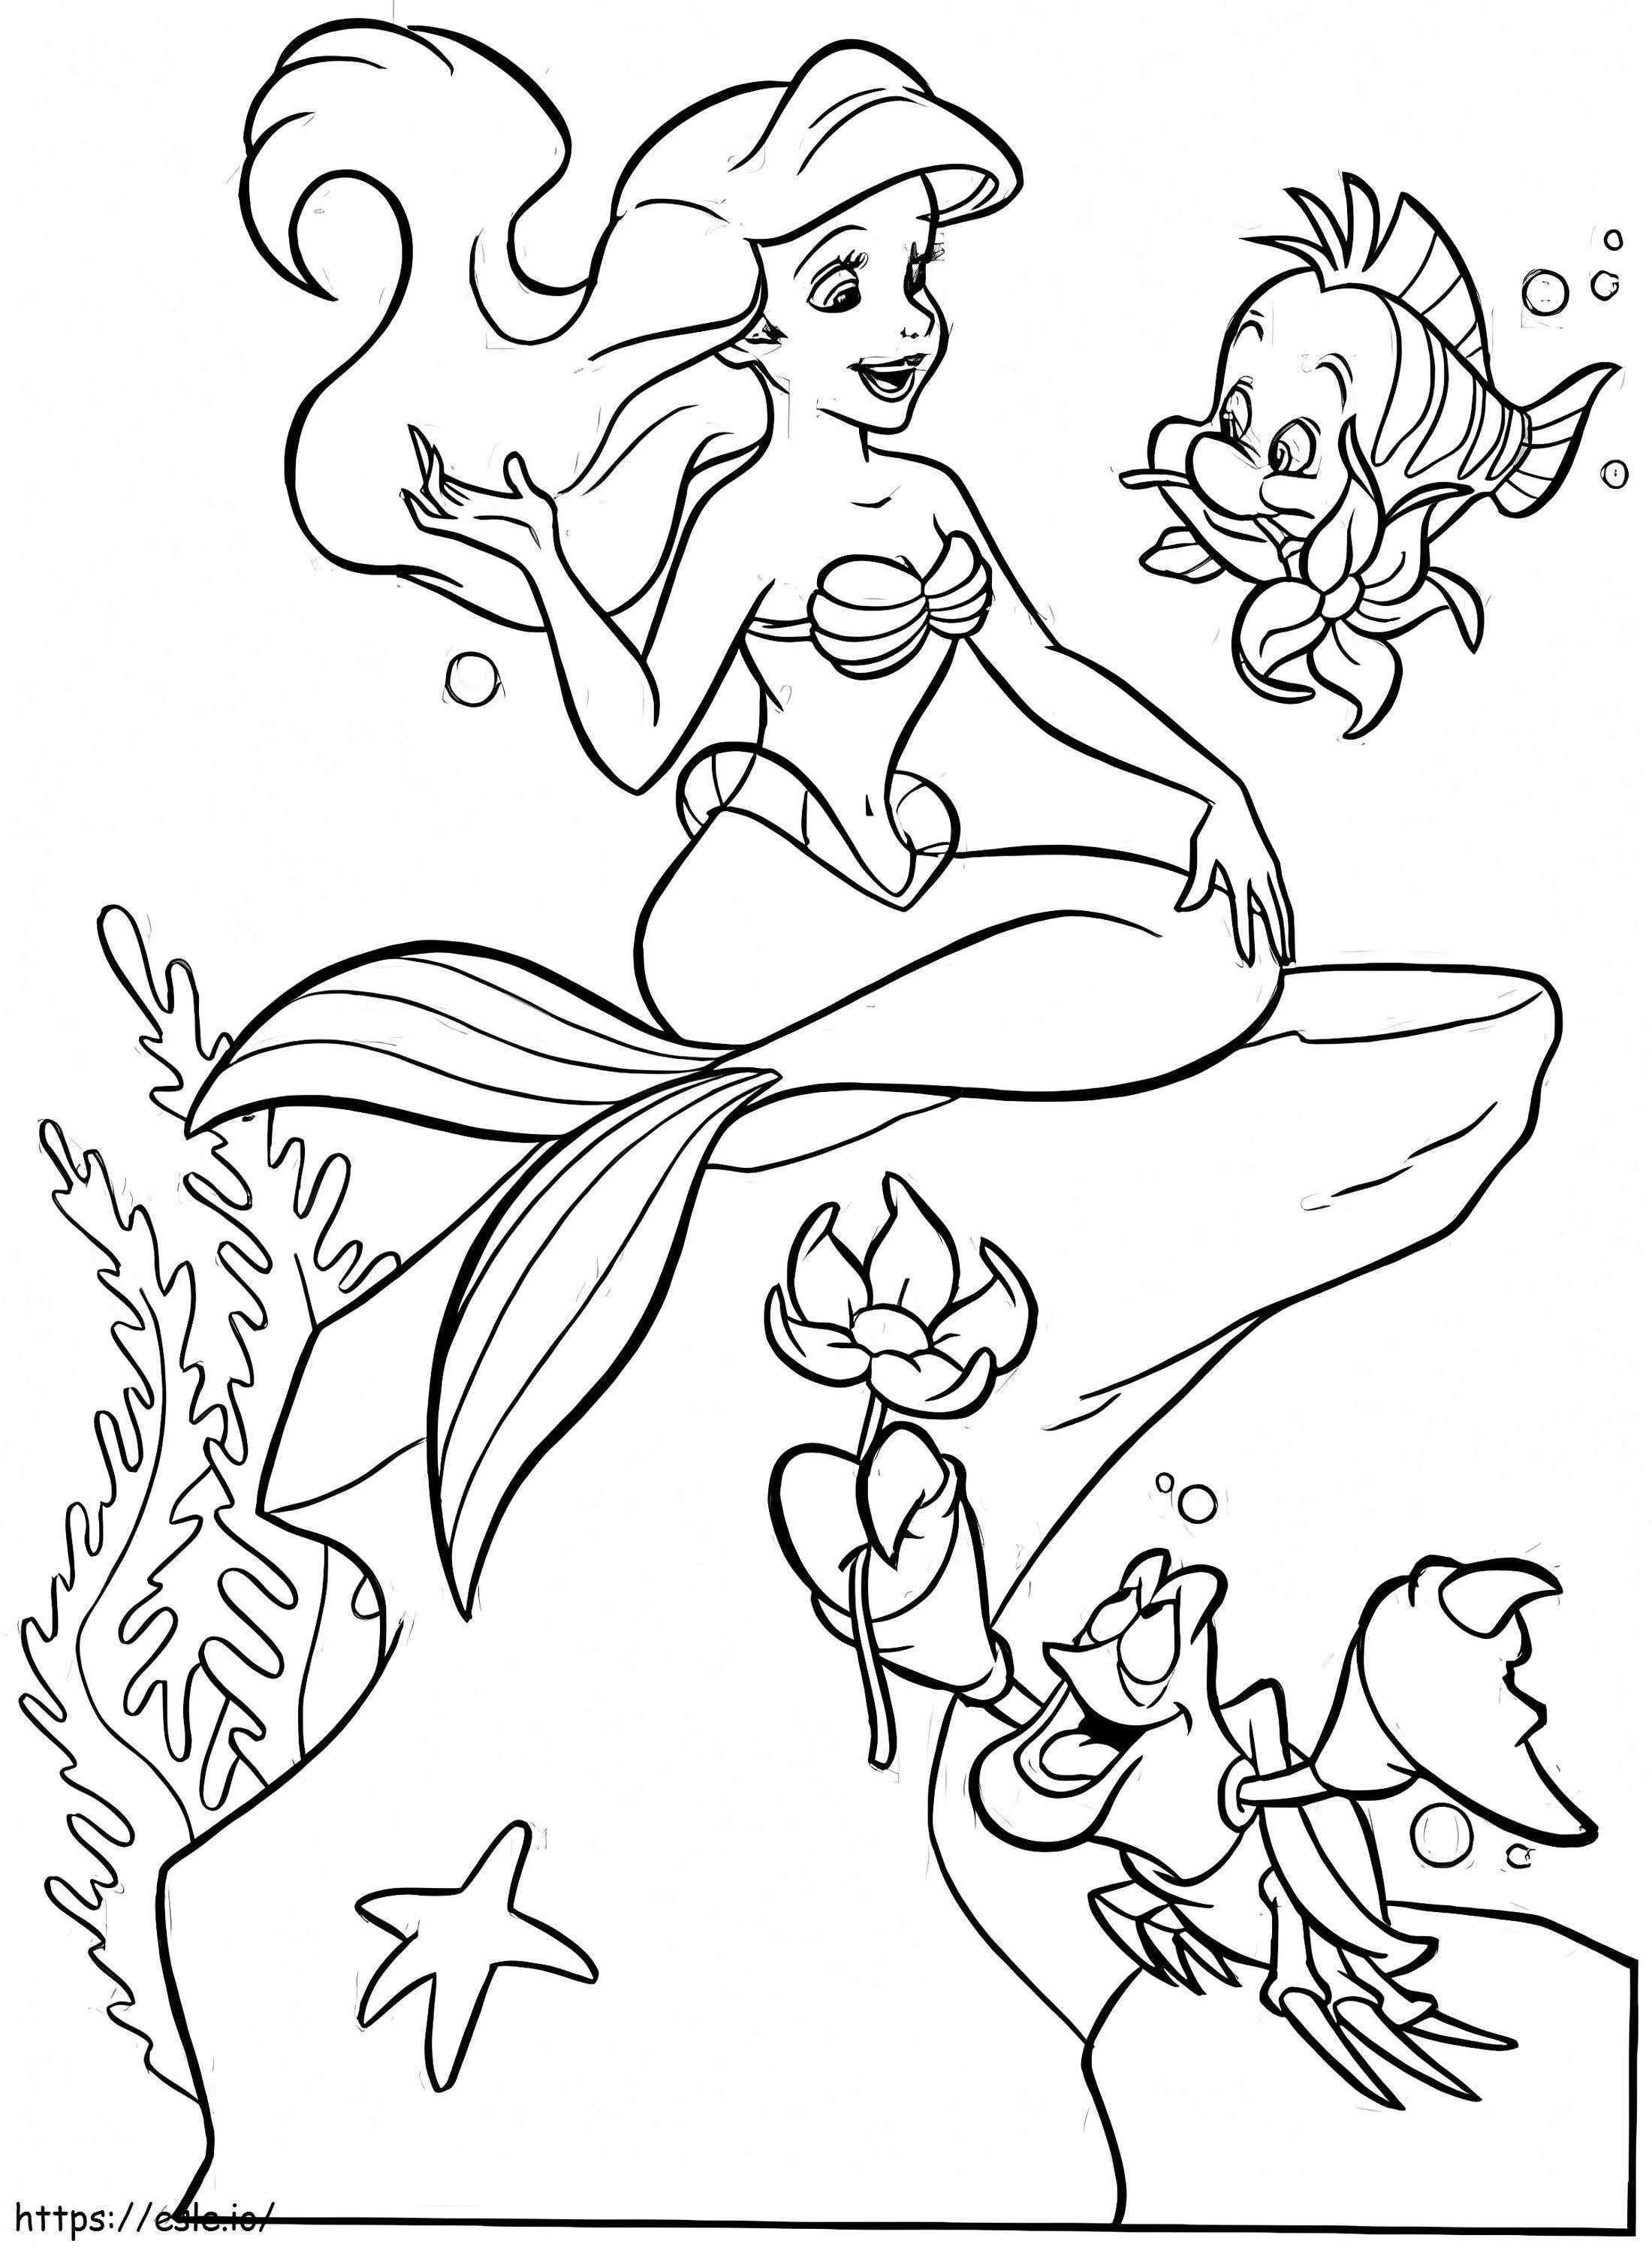 La sirenetta Ariel e i suoi amici da colorare